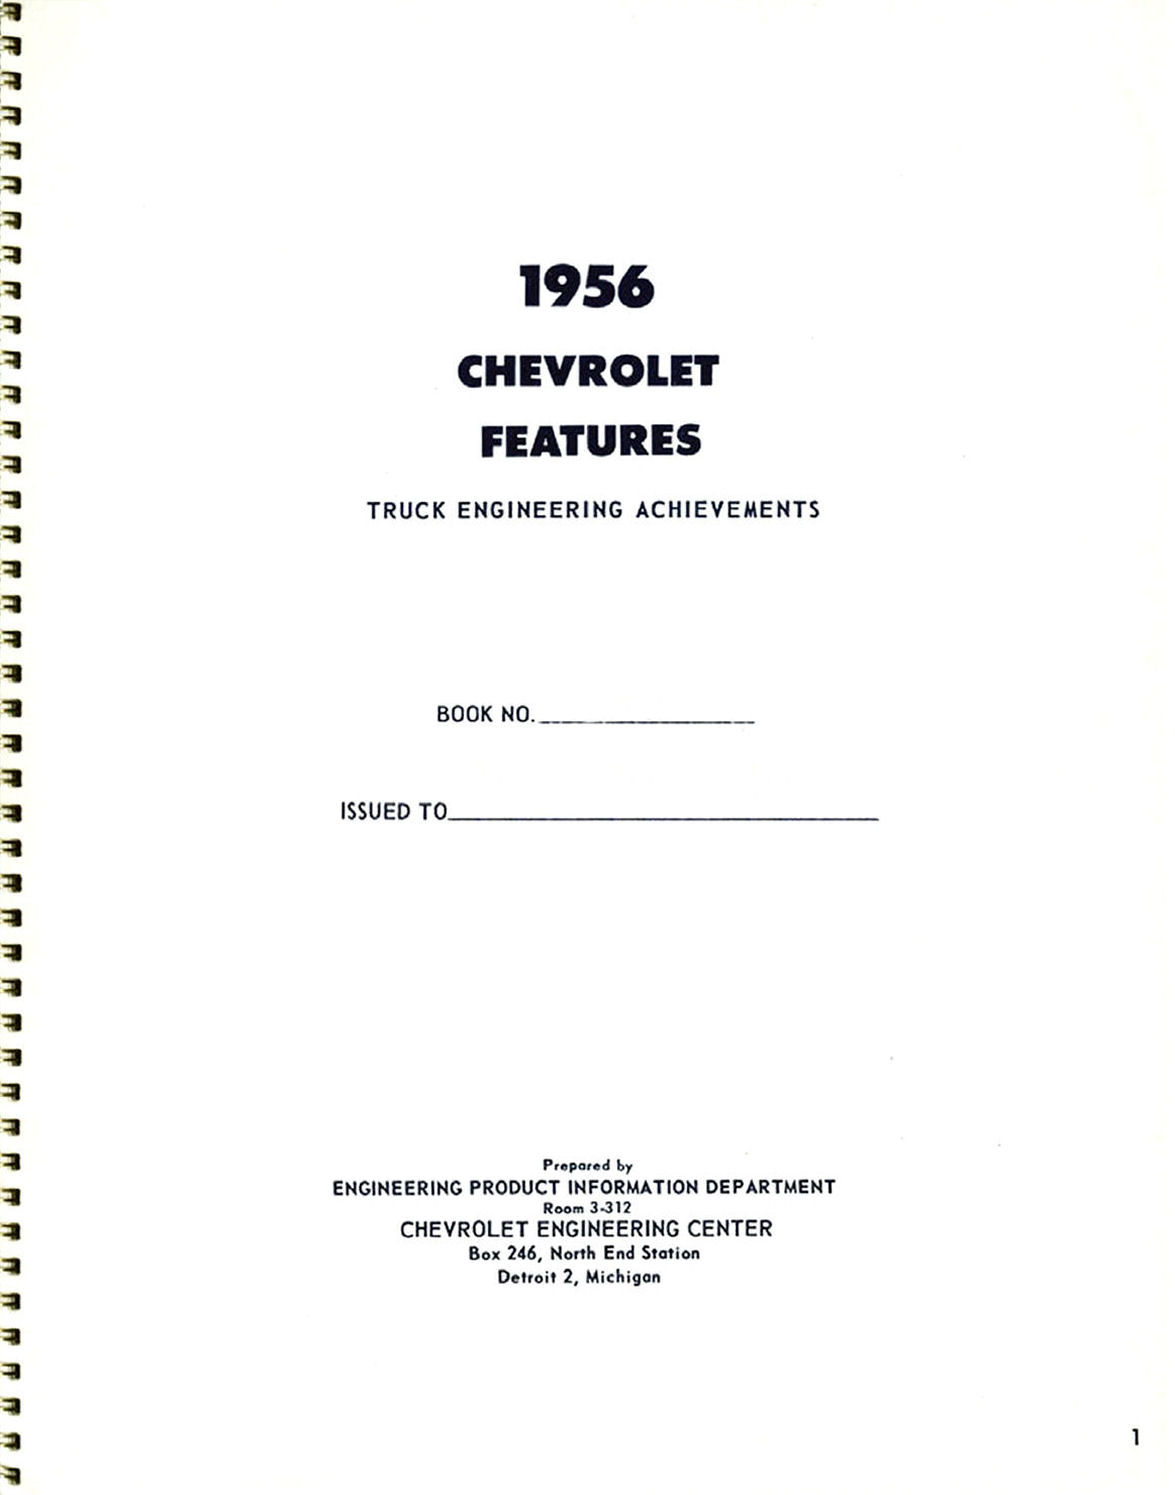 1956_Chevrolet_Truck_Engineering_Features-01